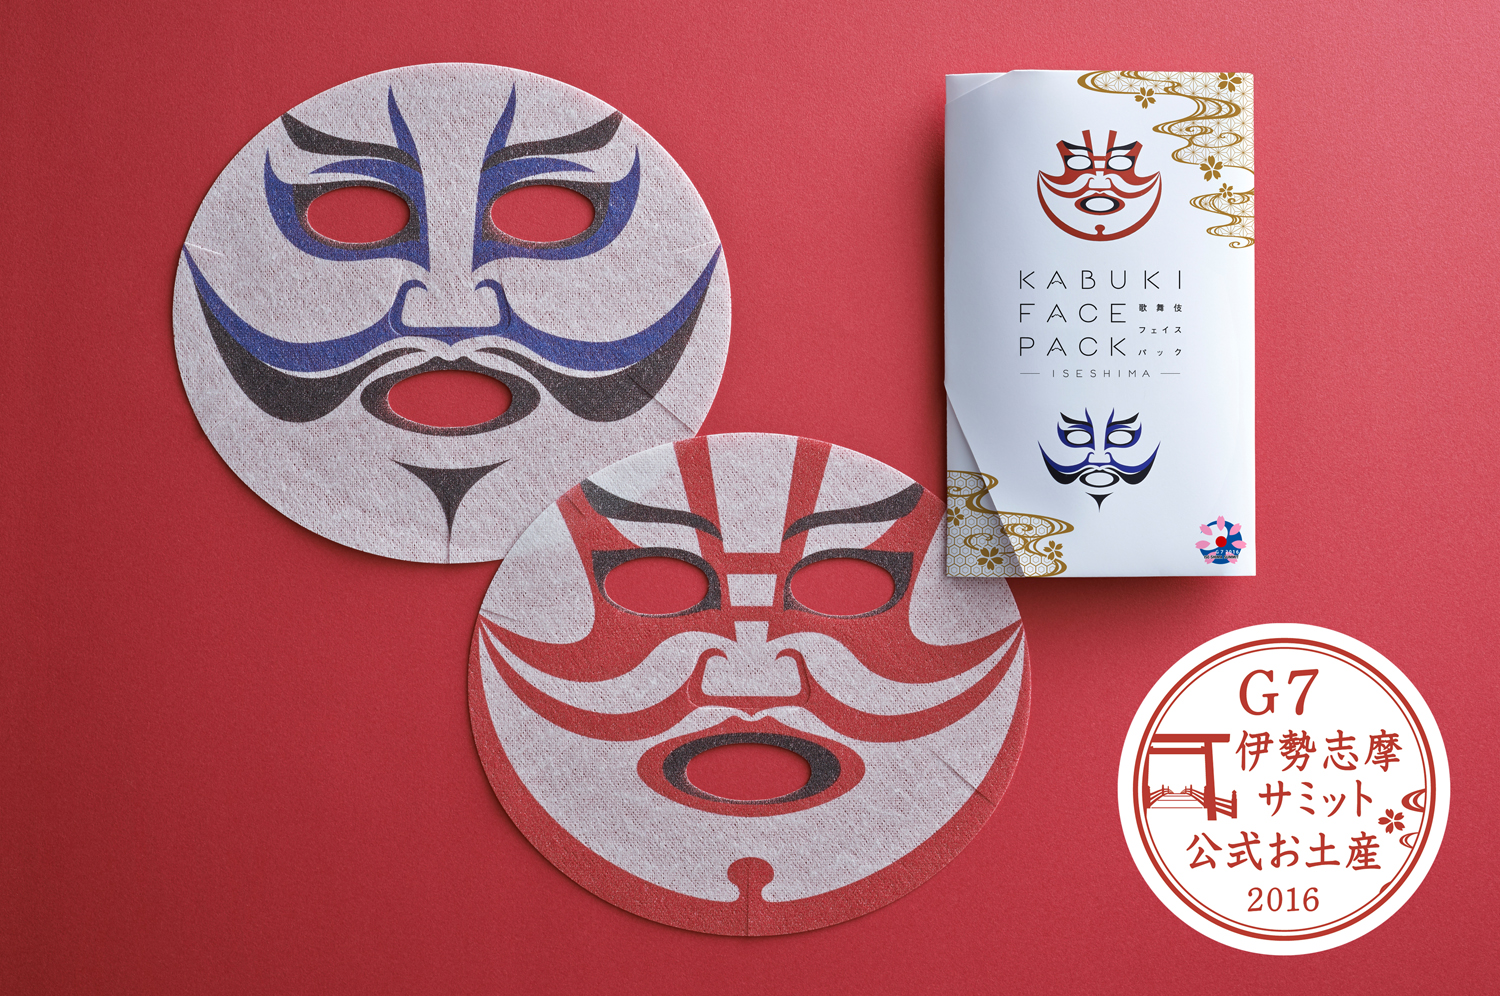 歌舞伎フェイスパック がｇ７伊勢志摩サミット16の公式お土産に選定 一心堂本舗 株式会社のプレスリリース